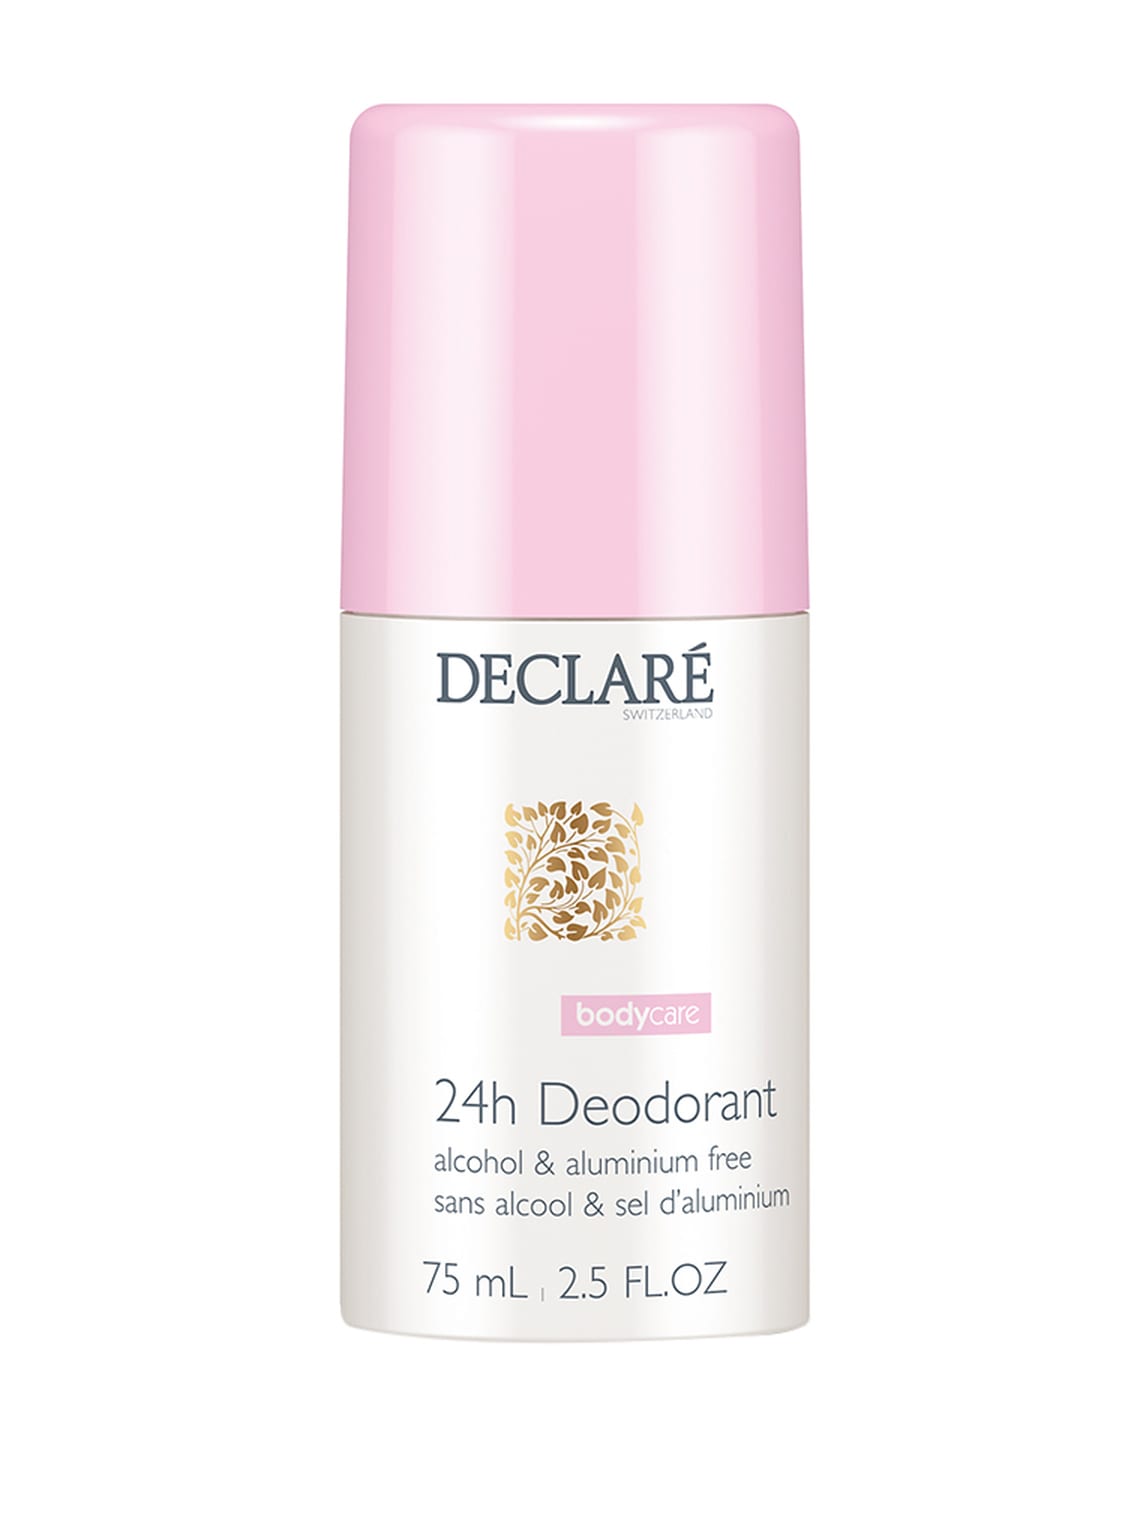 Image of Declaré Bodycare 24h Deodorant 75 ml